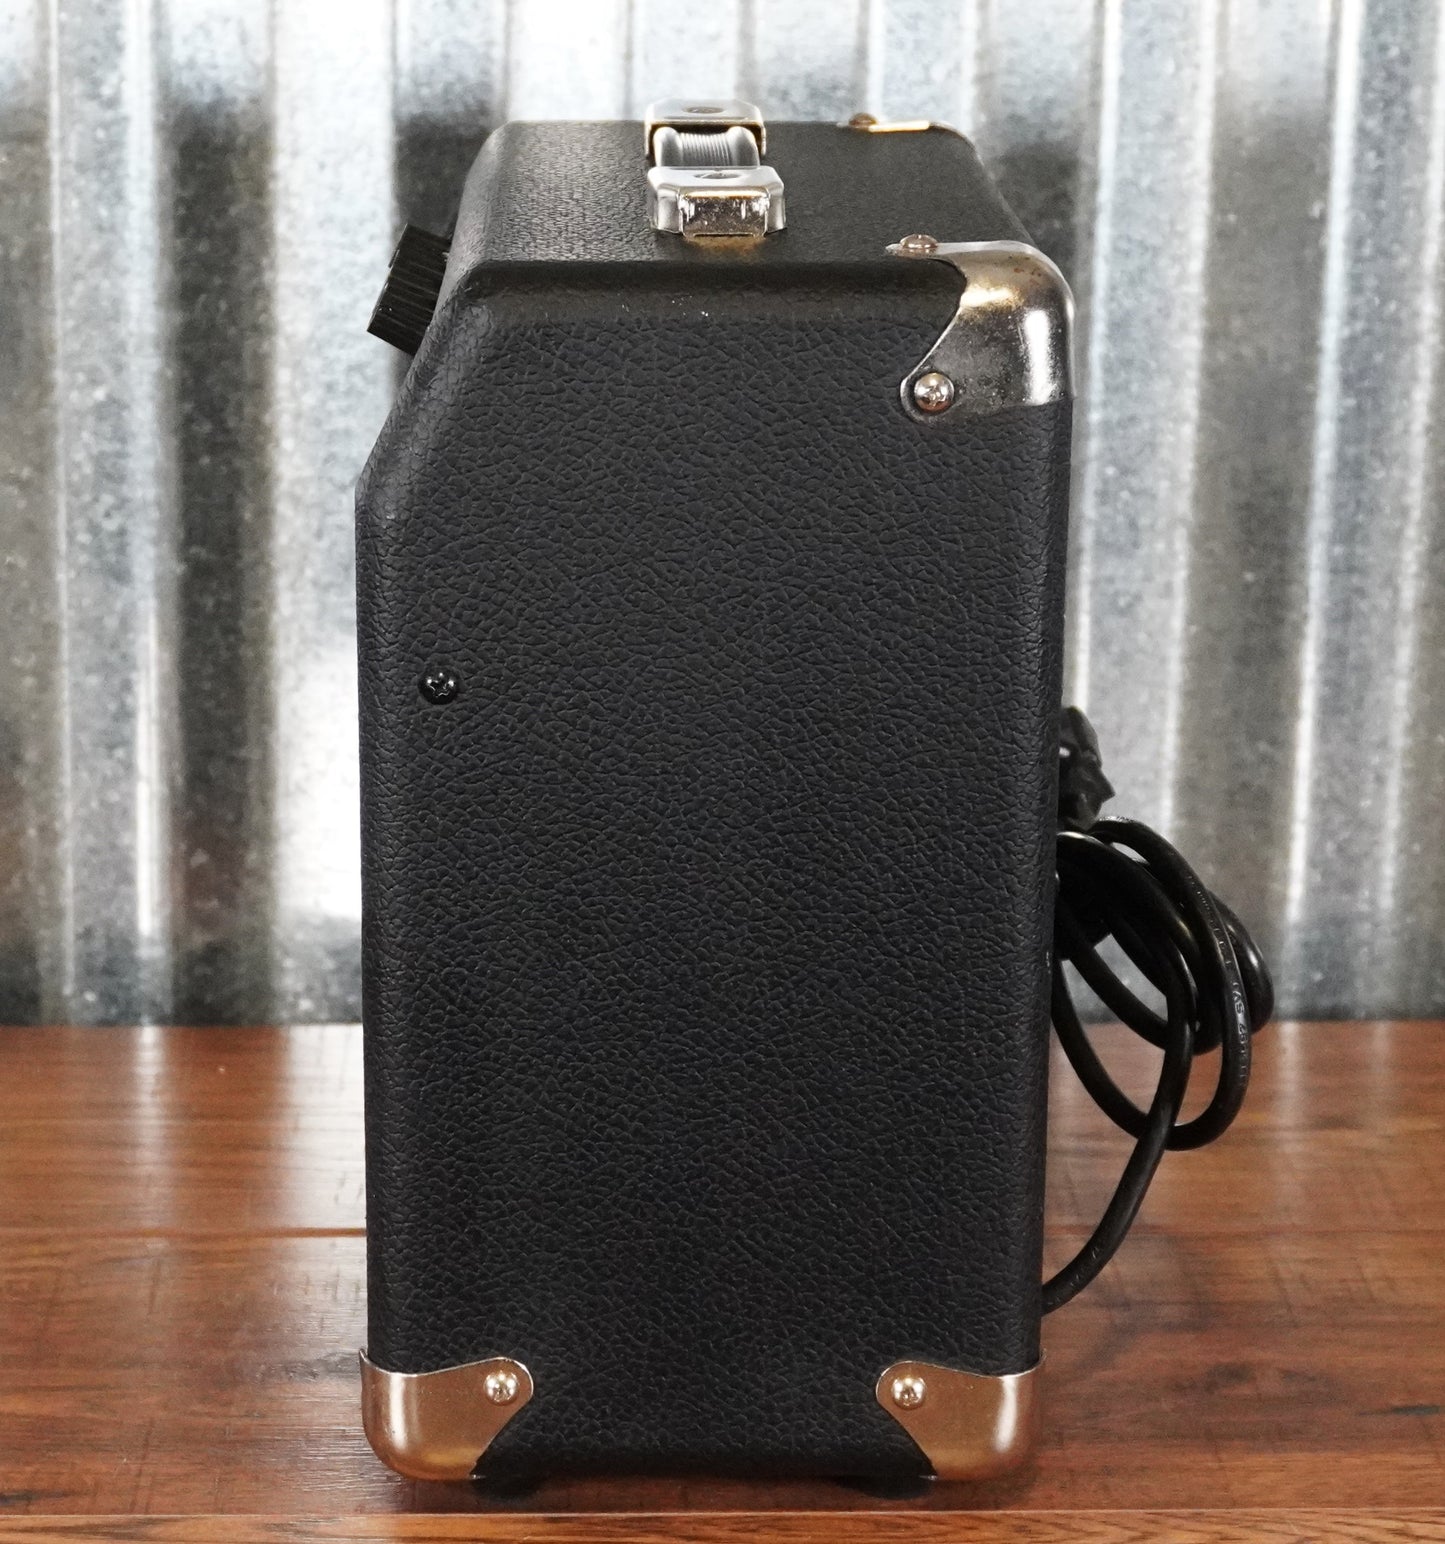 Fender Frontman 10G 10 Watt 6" Guitar Combo Amplifier Used